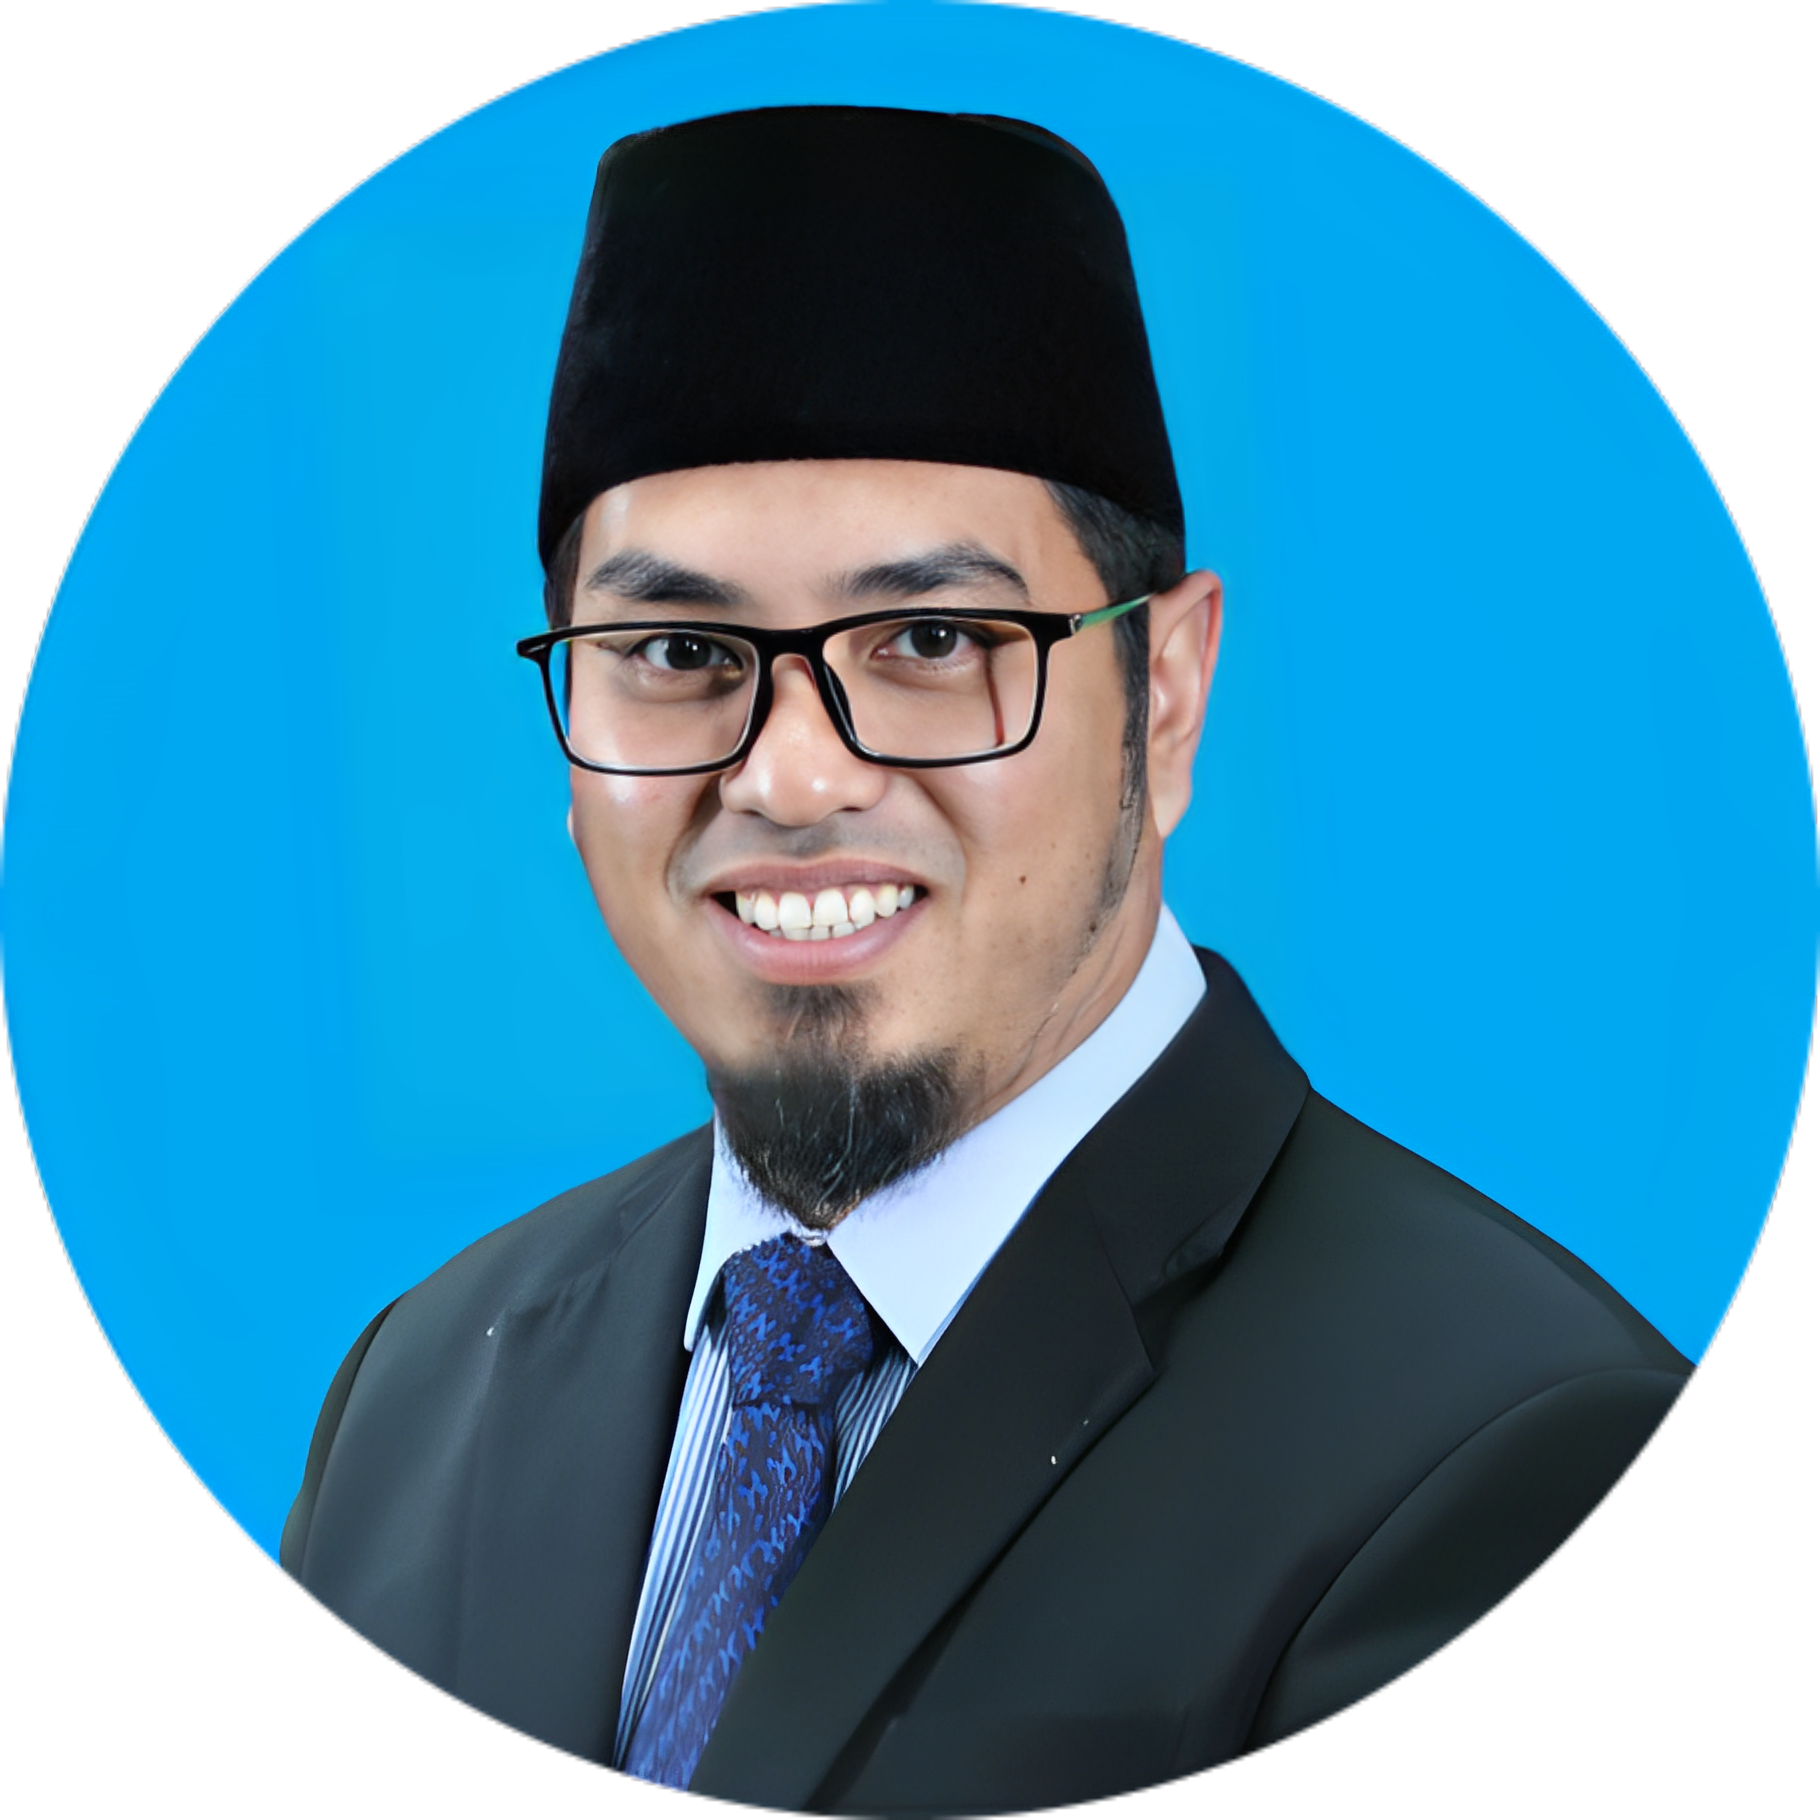 Mohd Khairul Amilin bin Zakaria